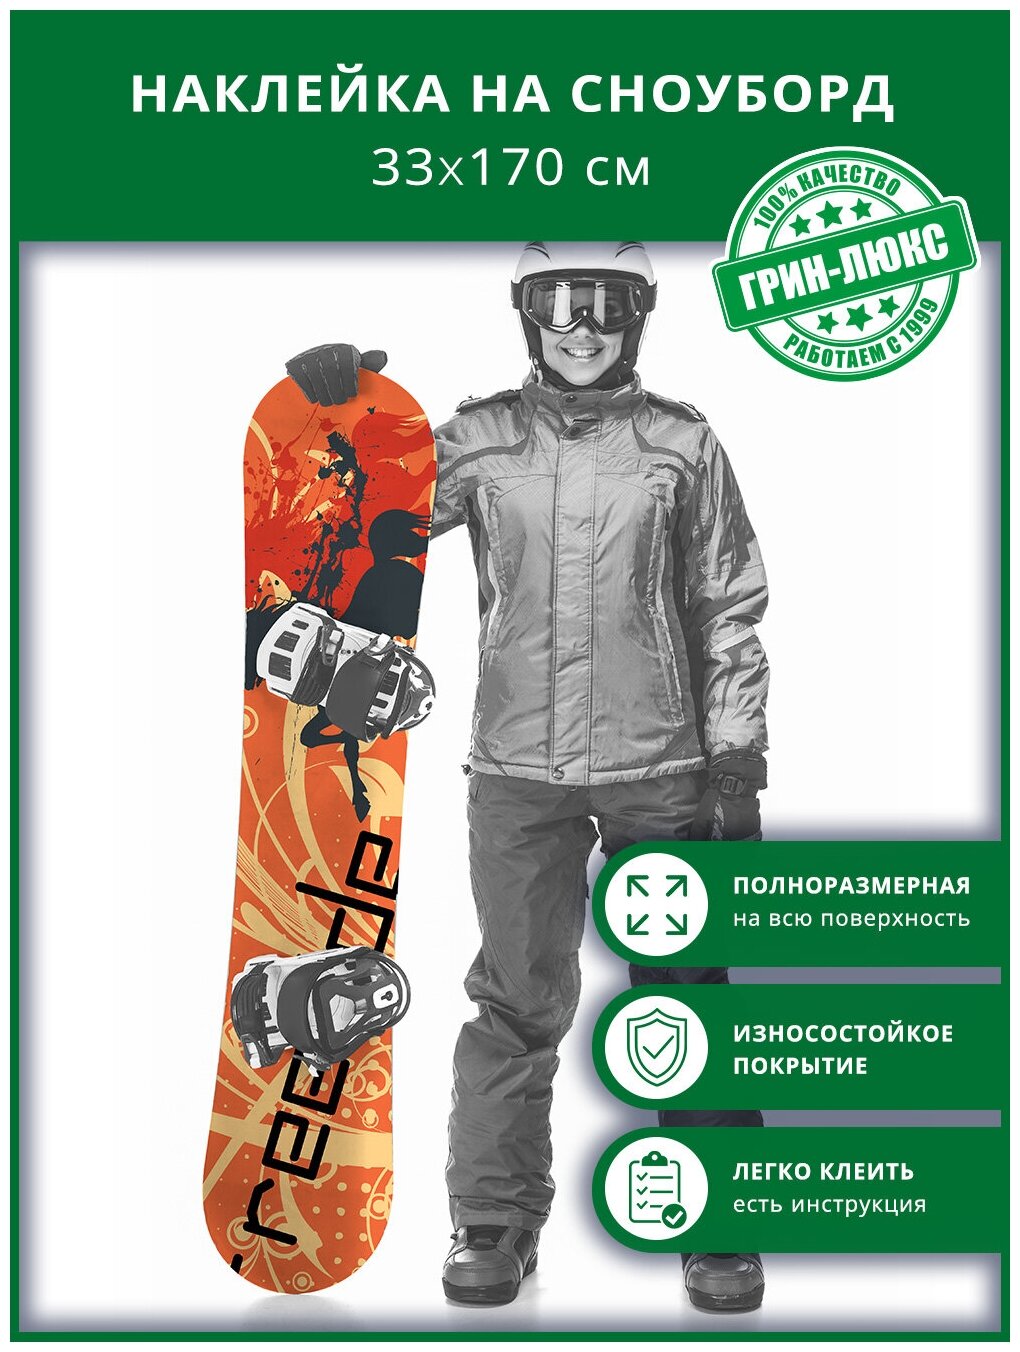 Наклейка на сноуборд с защитным глянцевым покрытием 33х170 см "Фрирайд на сноуборде"